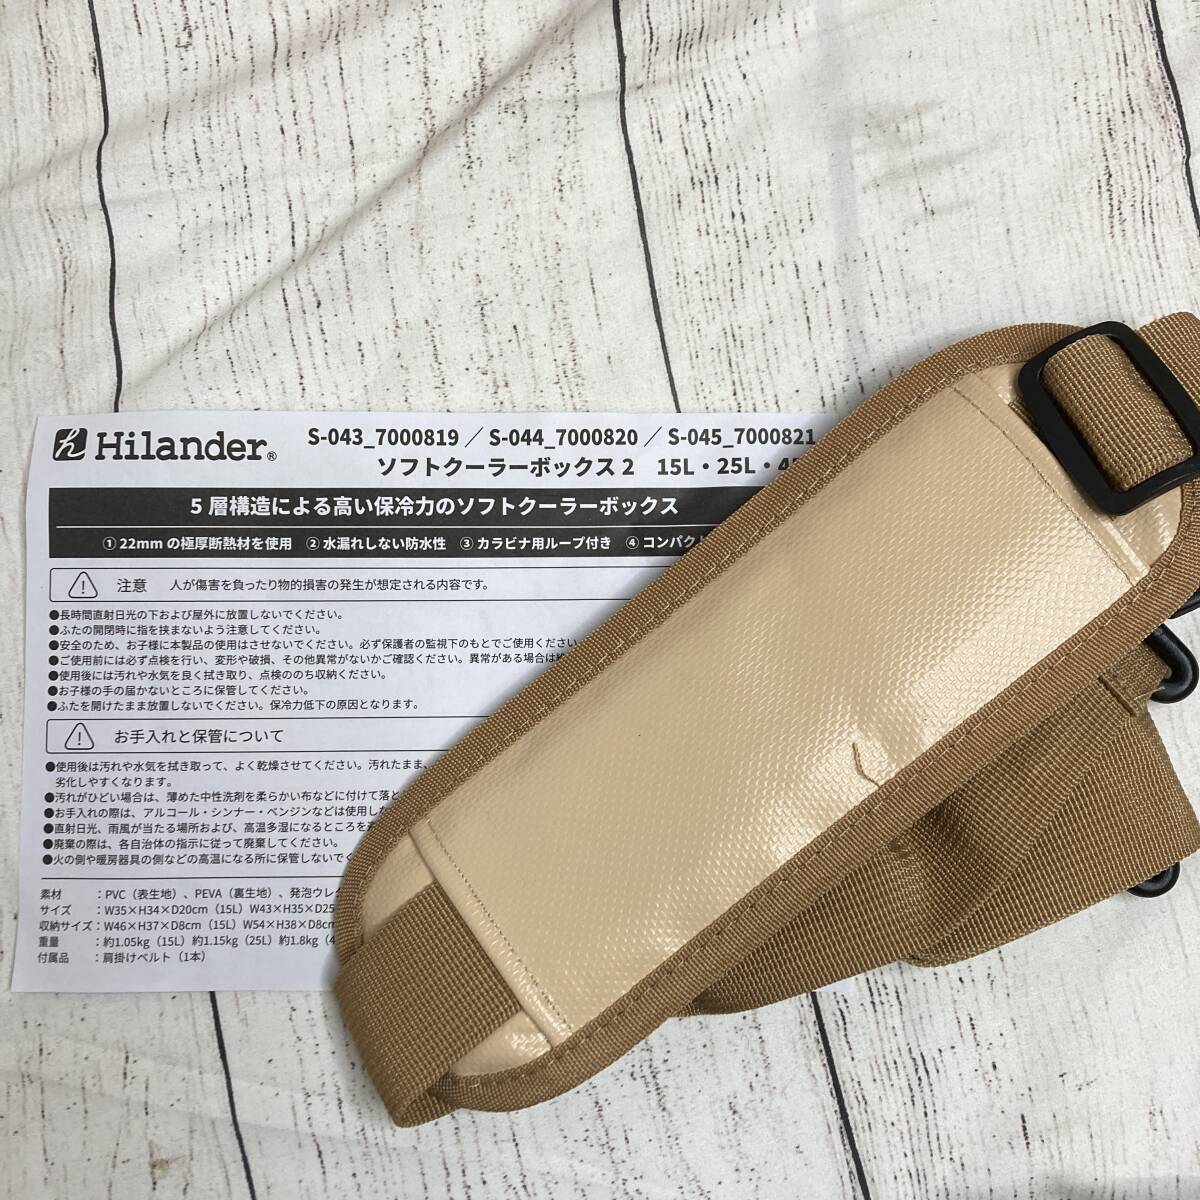 【新品未開封】Hilander(ハイランダー) ソフトクーラーボックス2 45L ベージュ S-045 /Y21571-B2